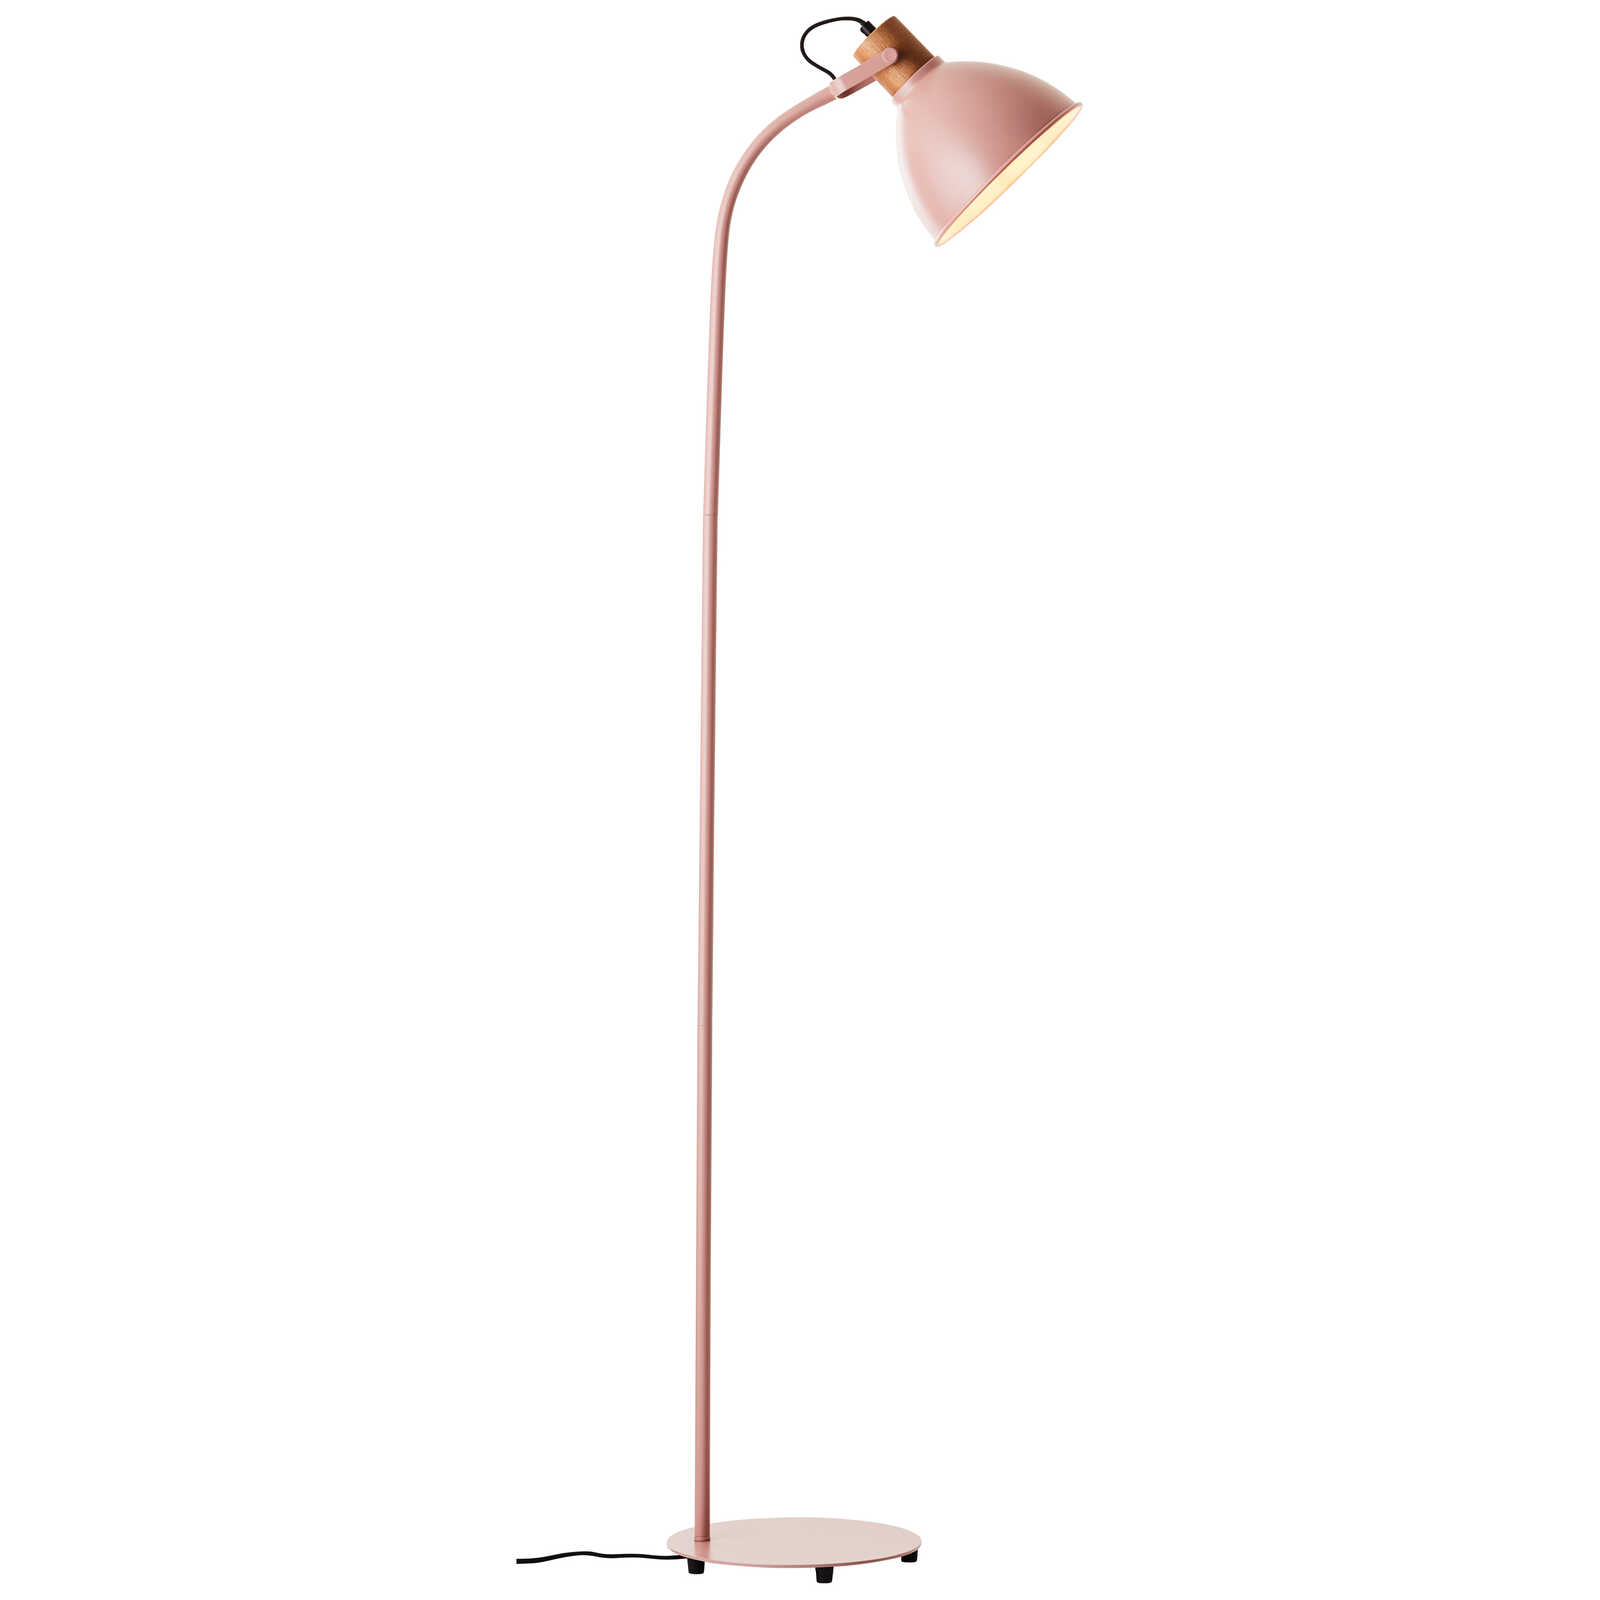             Wooden floor lamp - Franziska 7 - Pink
        